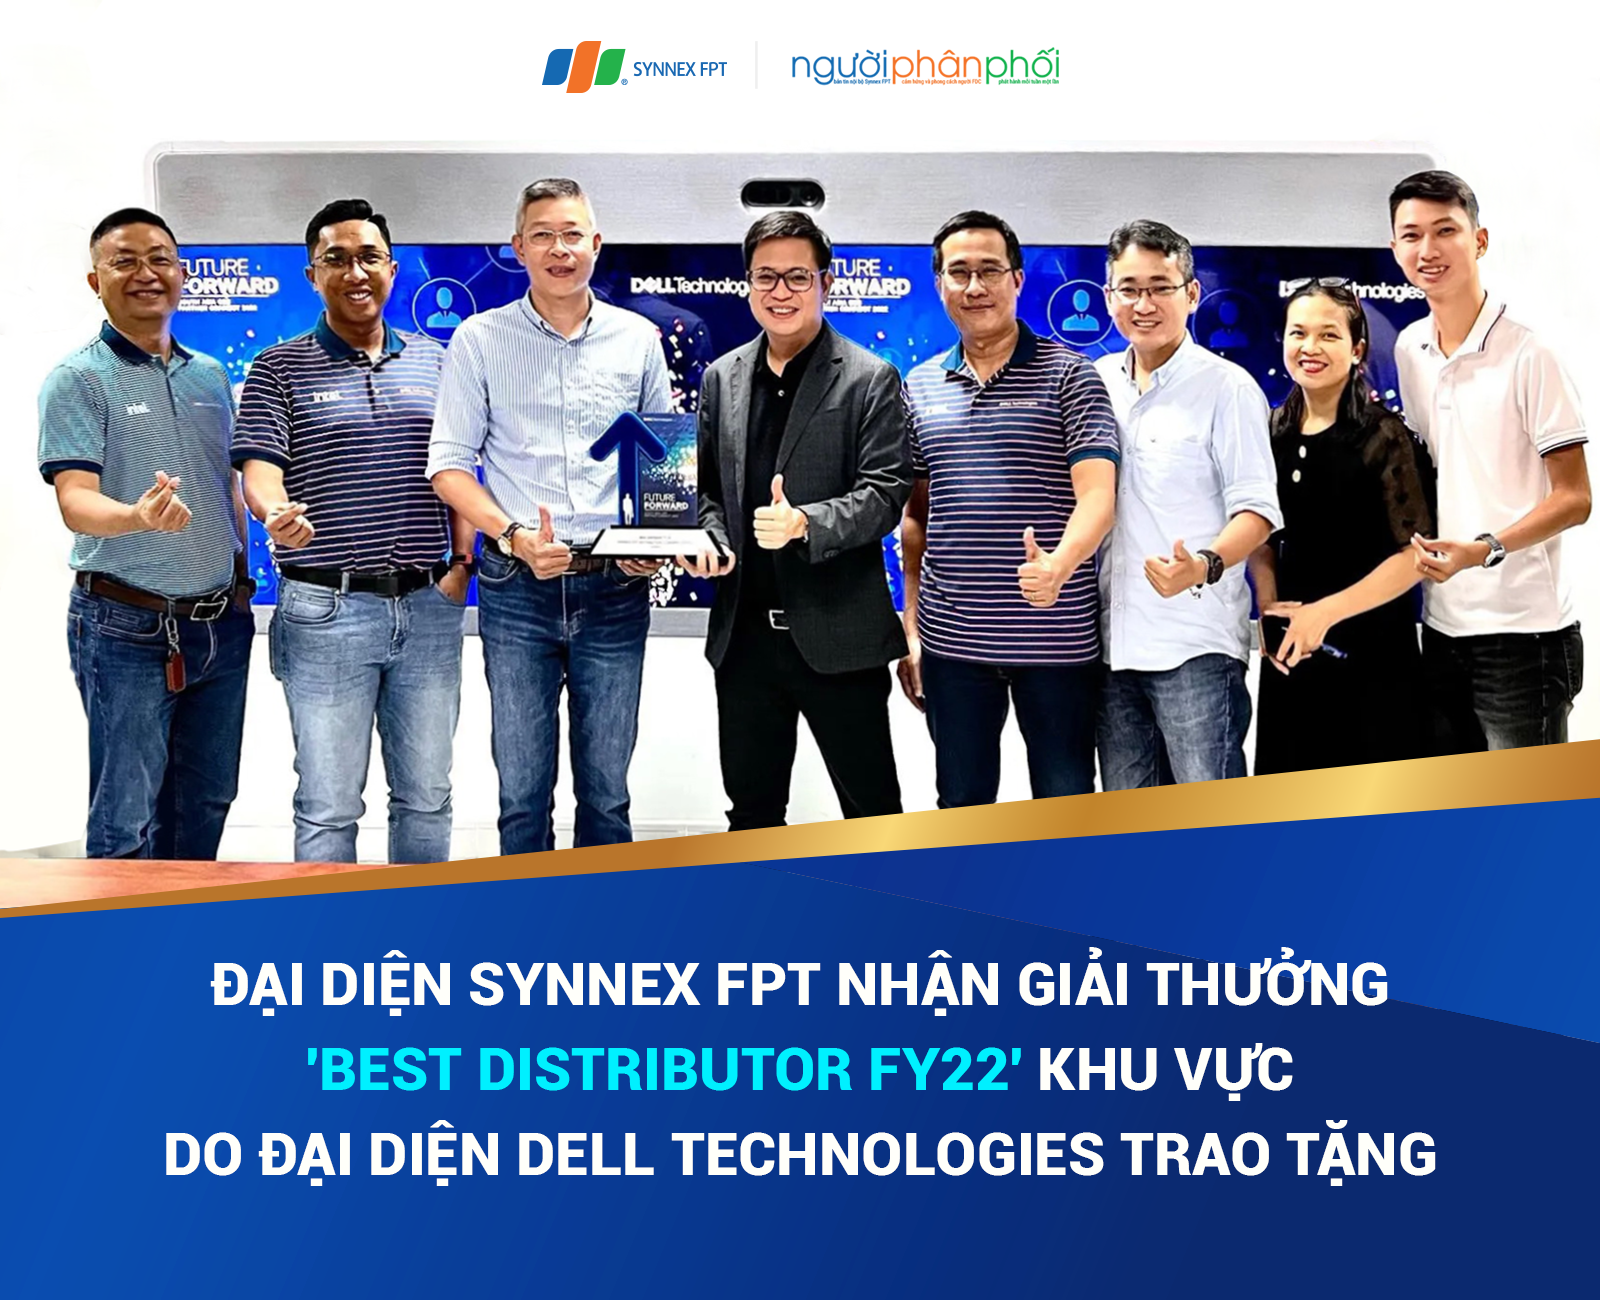 Synnex FPT 2 năm liền là NPP xuất sắc nhất khu vực Nam Á của Dell Technologies